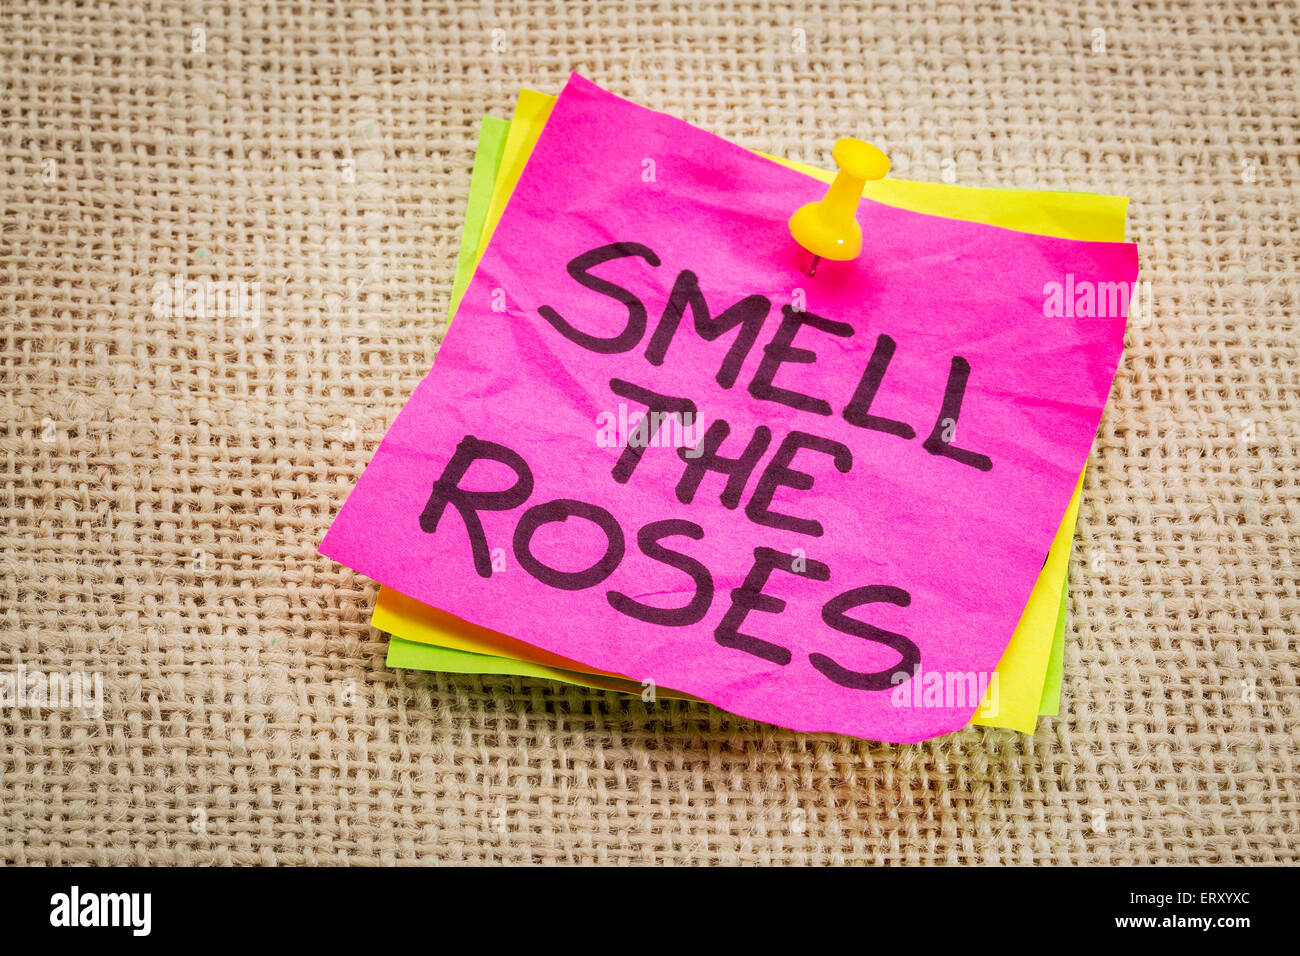 den Duft der Rosen - inspirierende Erinnerung auf einem Zettel gegen Sackleinen Leinwand Stockfoto